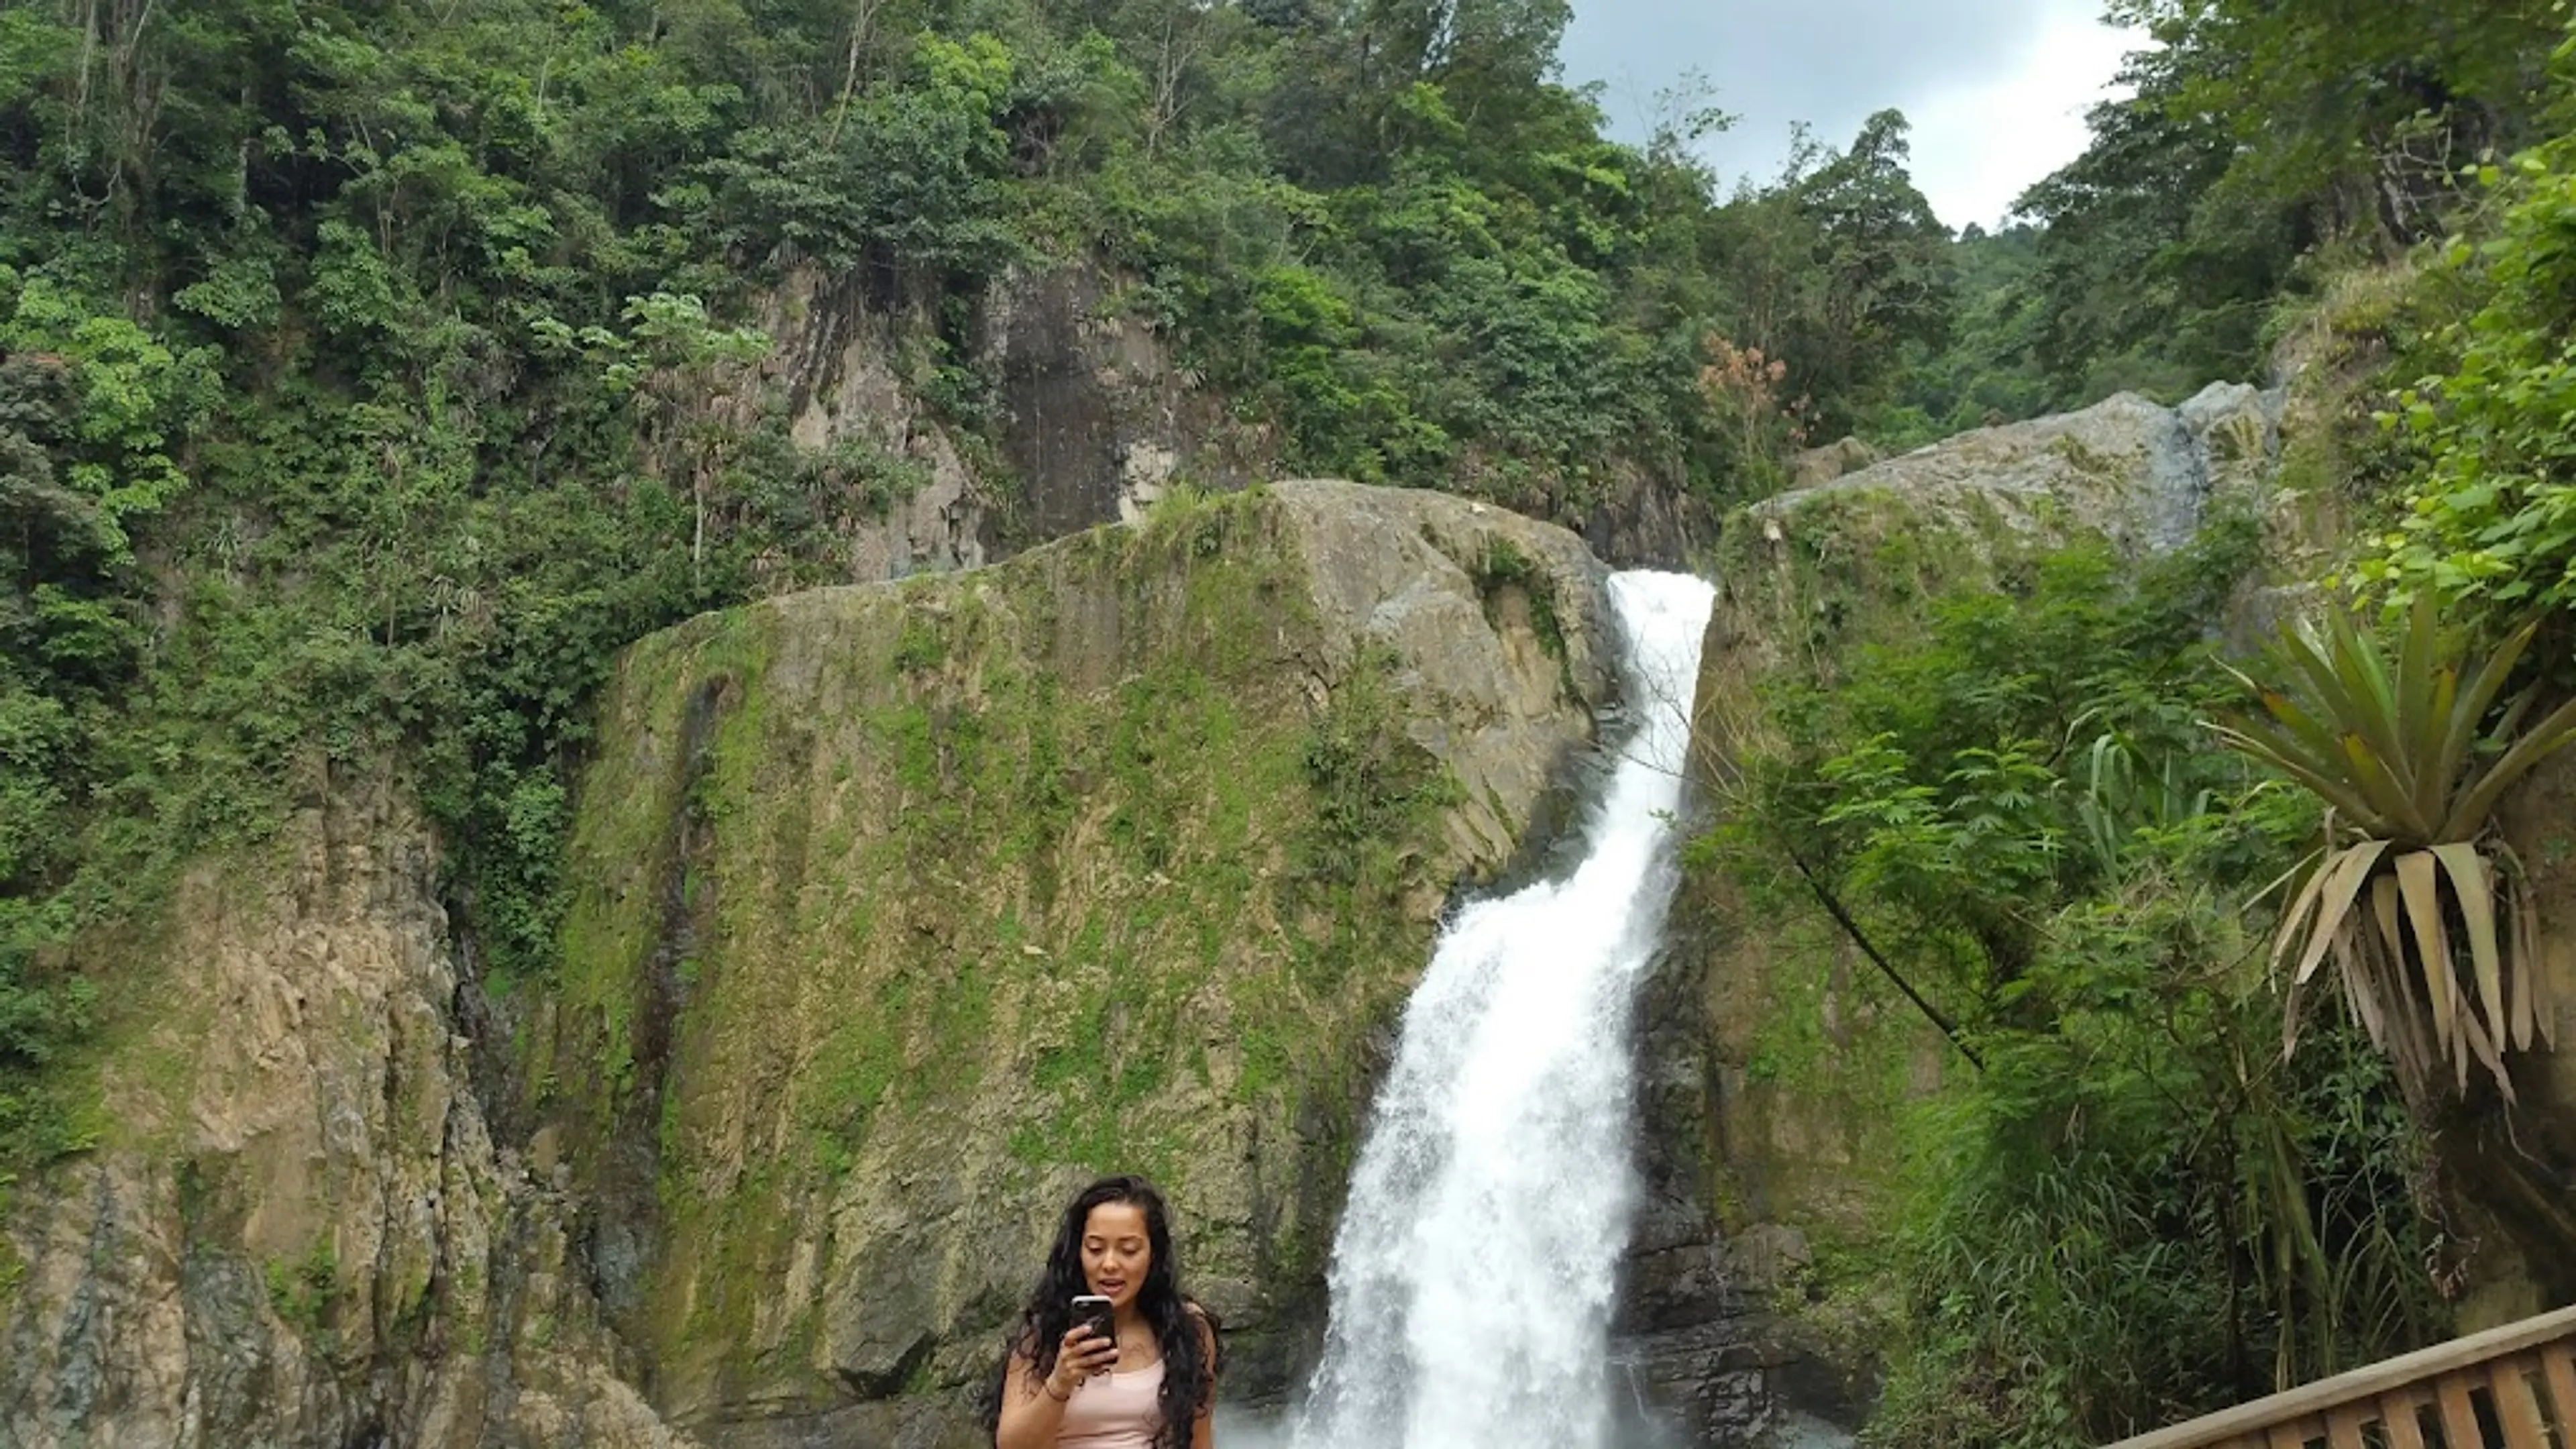 Jimenoa Waterfalls